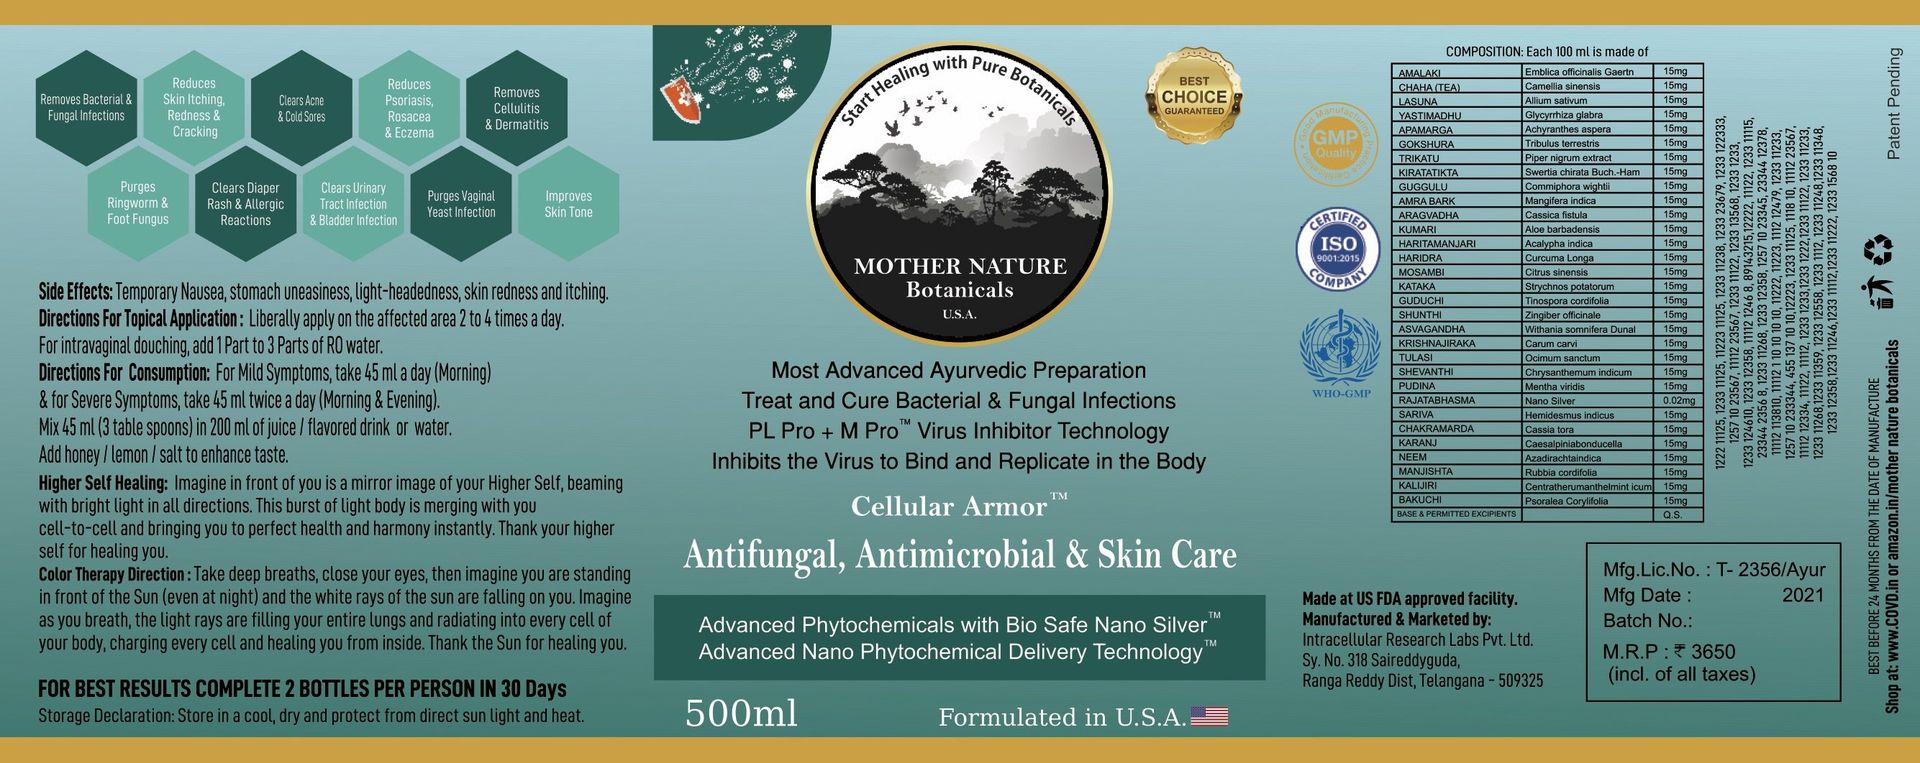 Mother Nature Botanicals Antifungal, Antibacterial & Skin Care - hfnl!fe